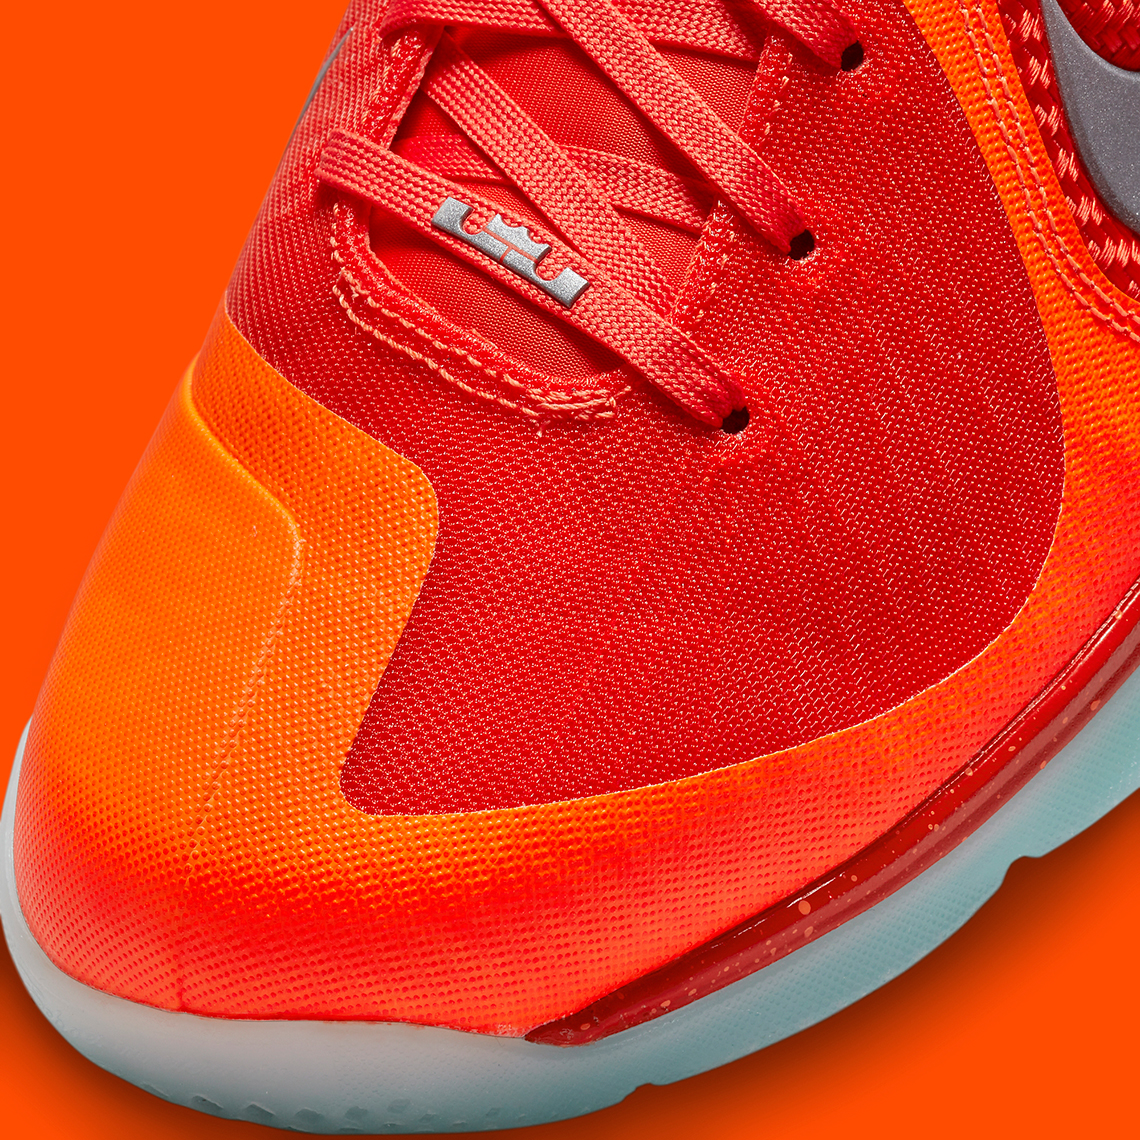 Nike Lebron 9 Big Bang 2022 Release Date 2